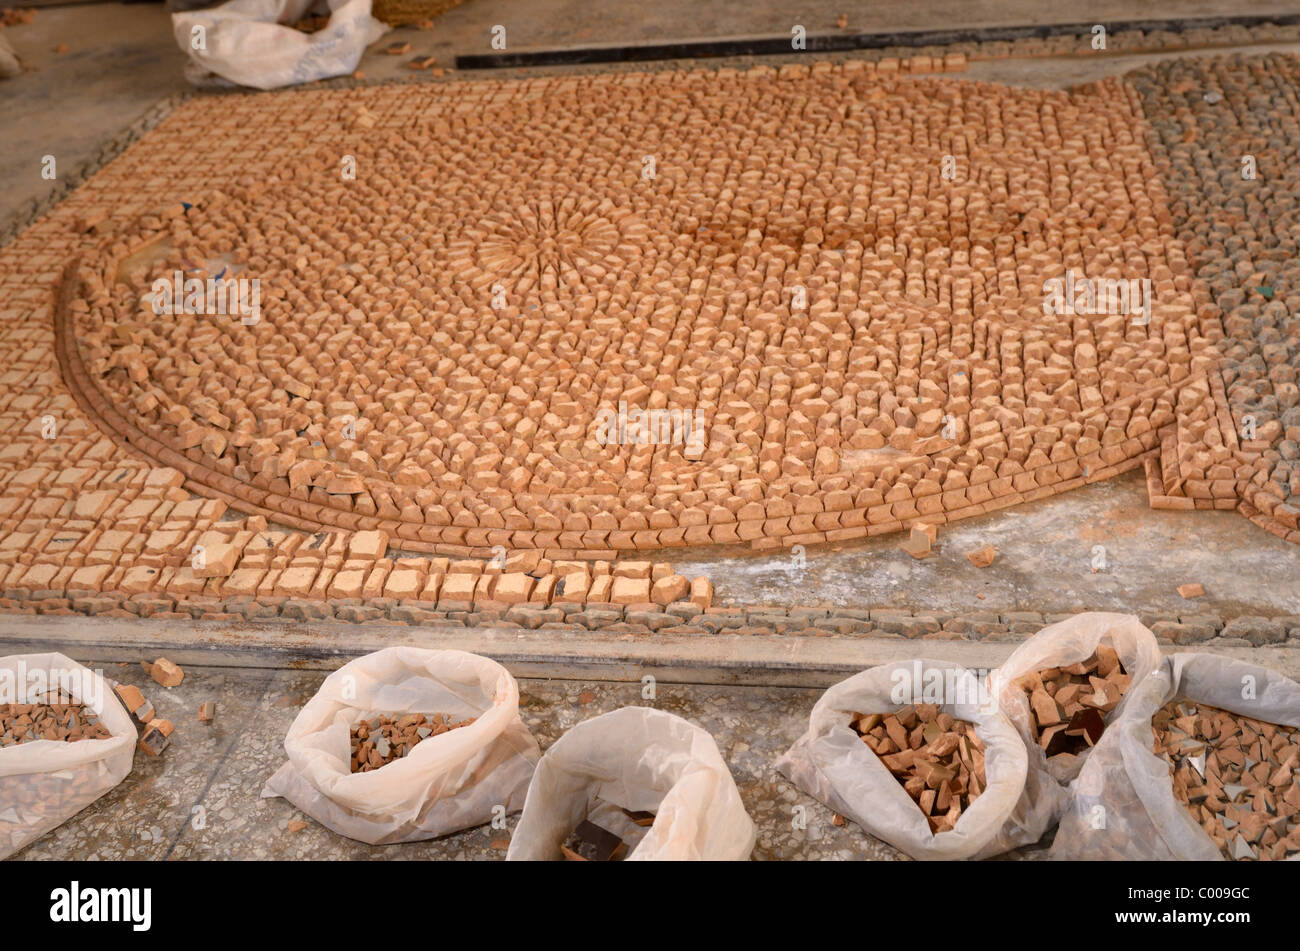 L'envers des morceaux de terre cuite Zellige carreaux émaillés pour former un motif en mosaïque Fez Maroc Afrique du Nord Banque D'Images